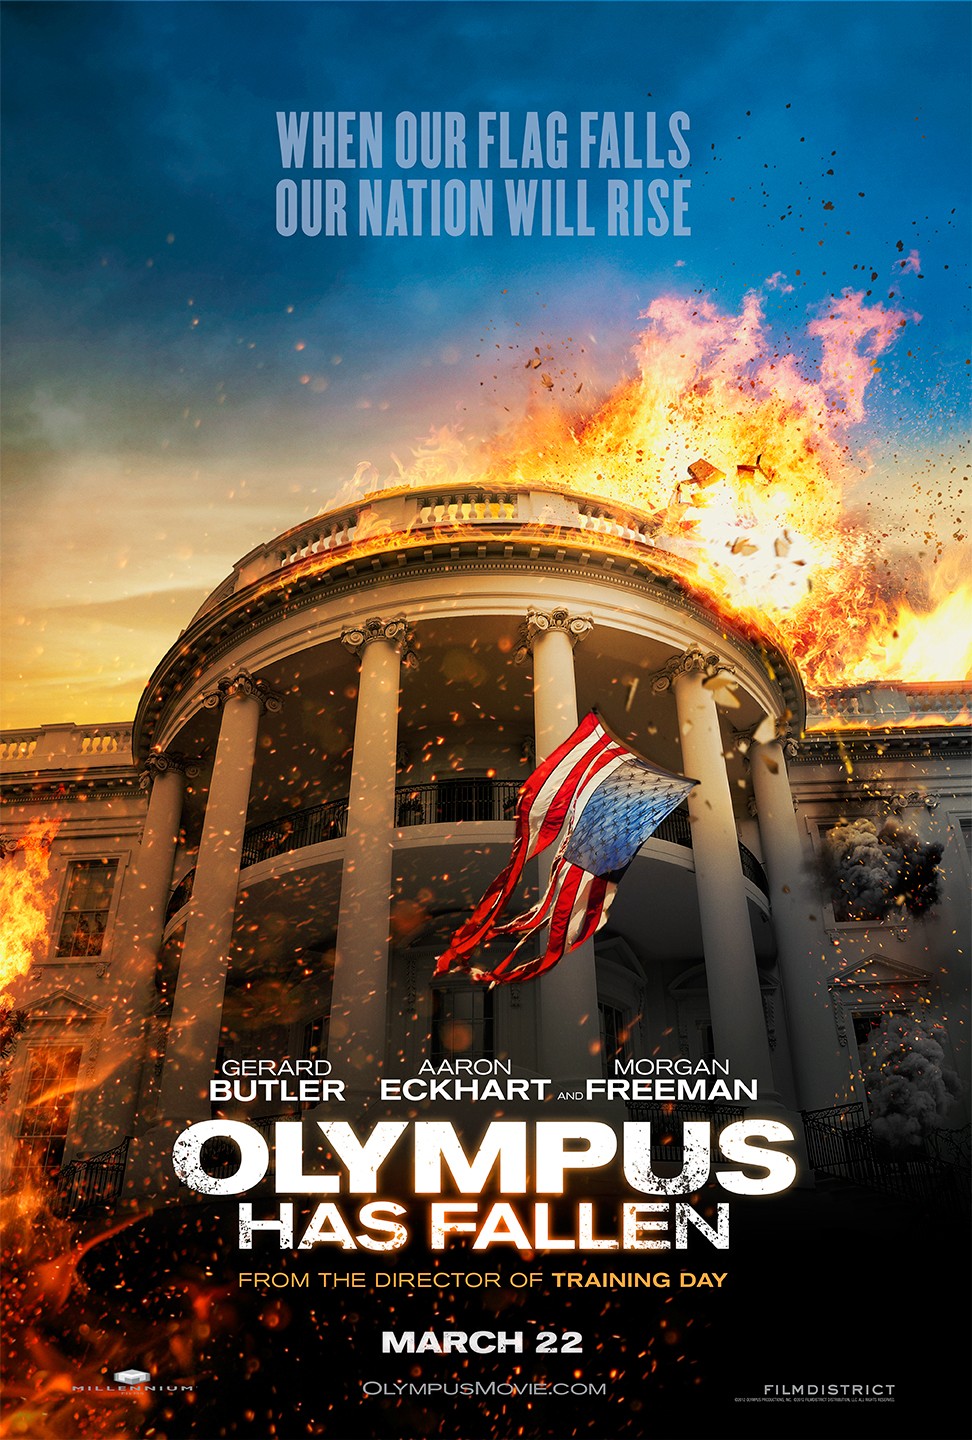 La chute de la Maison Blanche - Film 2013 | Cinéhorizons